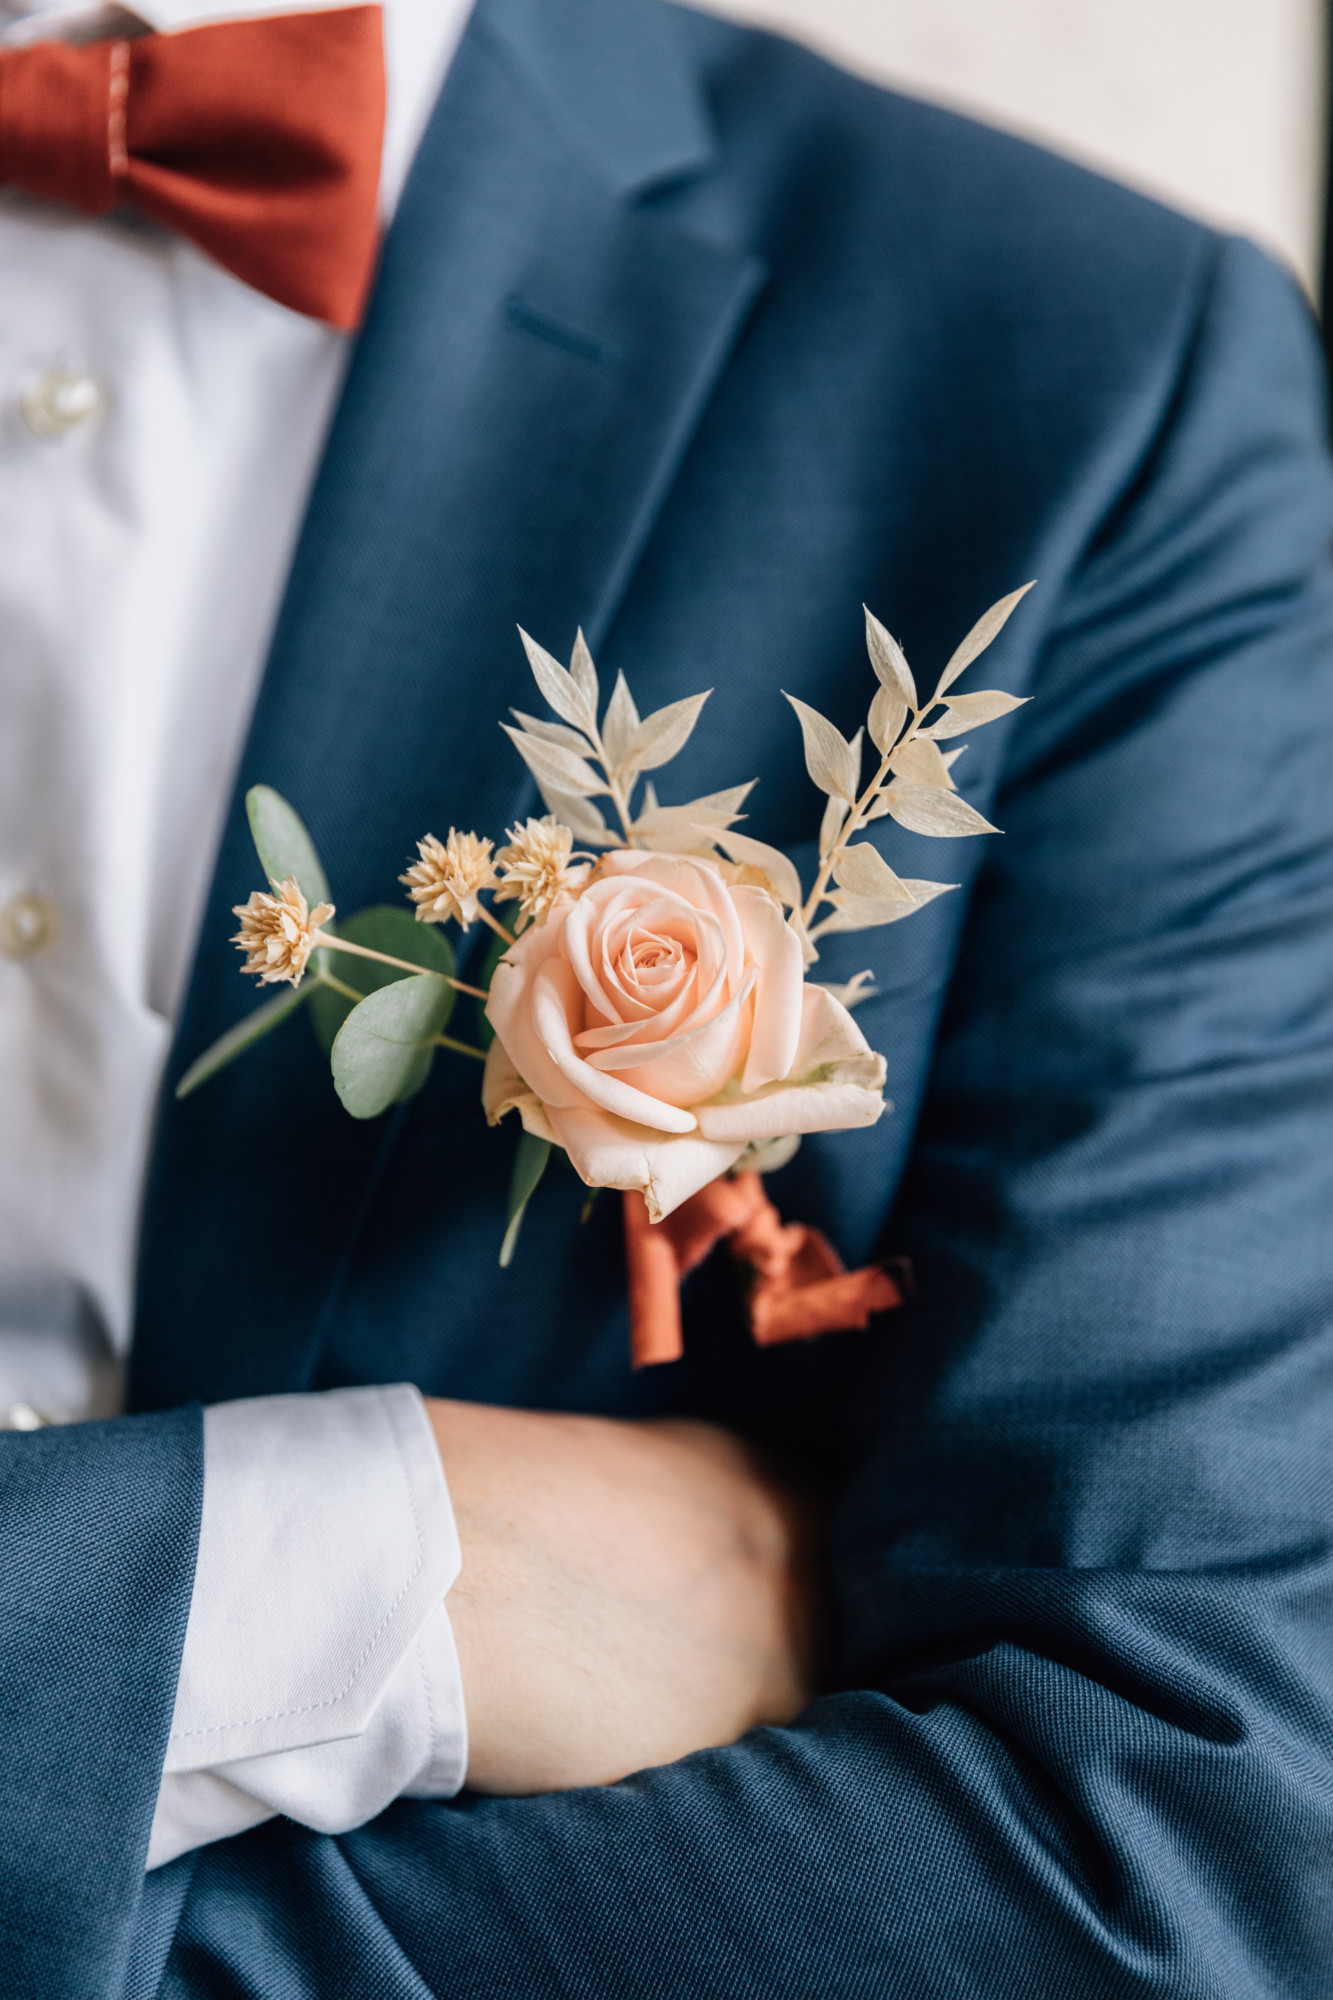 mariage civil, mariage chic, mariage moderne, mariage Paris, floral design, fleuriste mariage, mariée, bouquet de mariée, couple, boutonnière marié